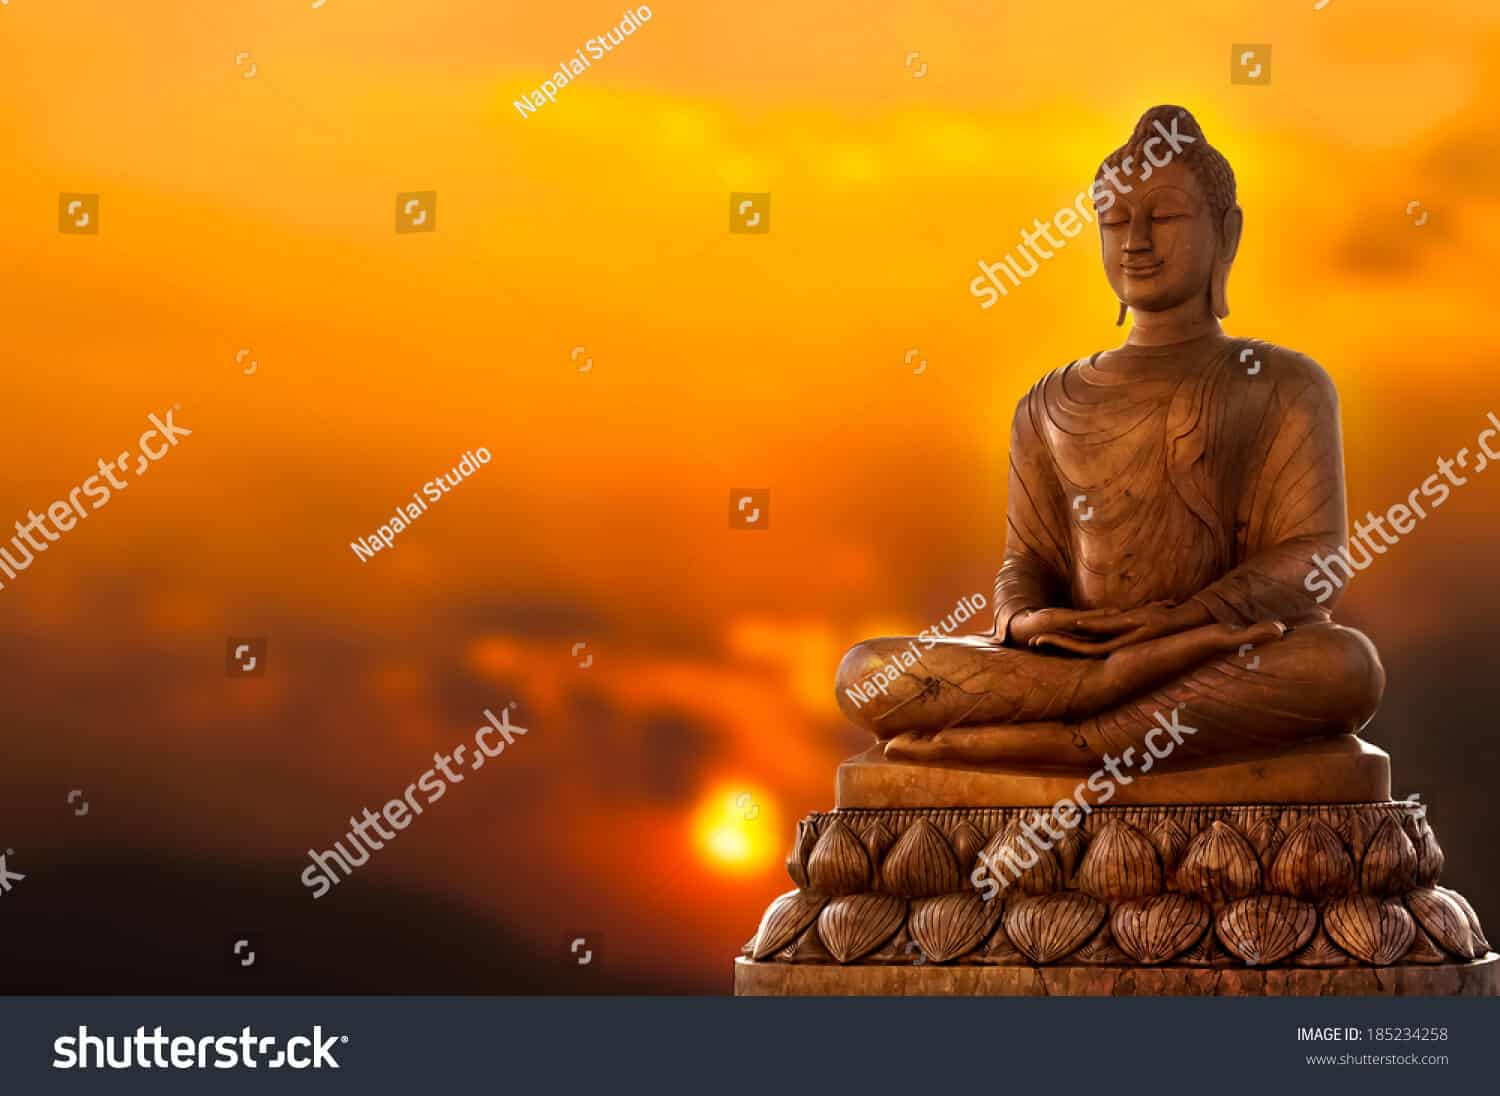 1 triệu 200 ngàn hình ảnh Đức Phật chất lượng cao trên Shutterstock